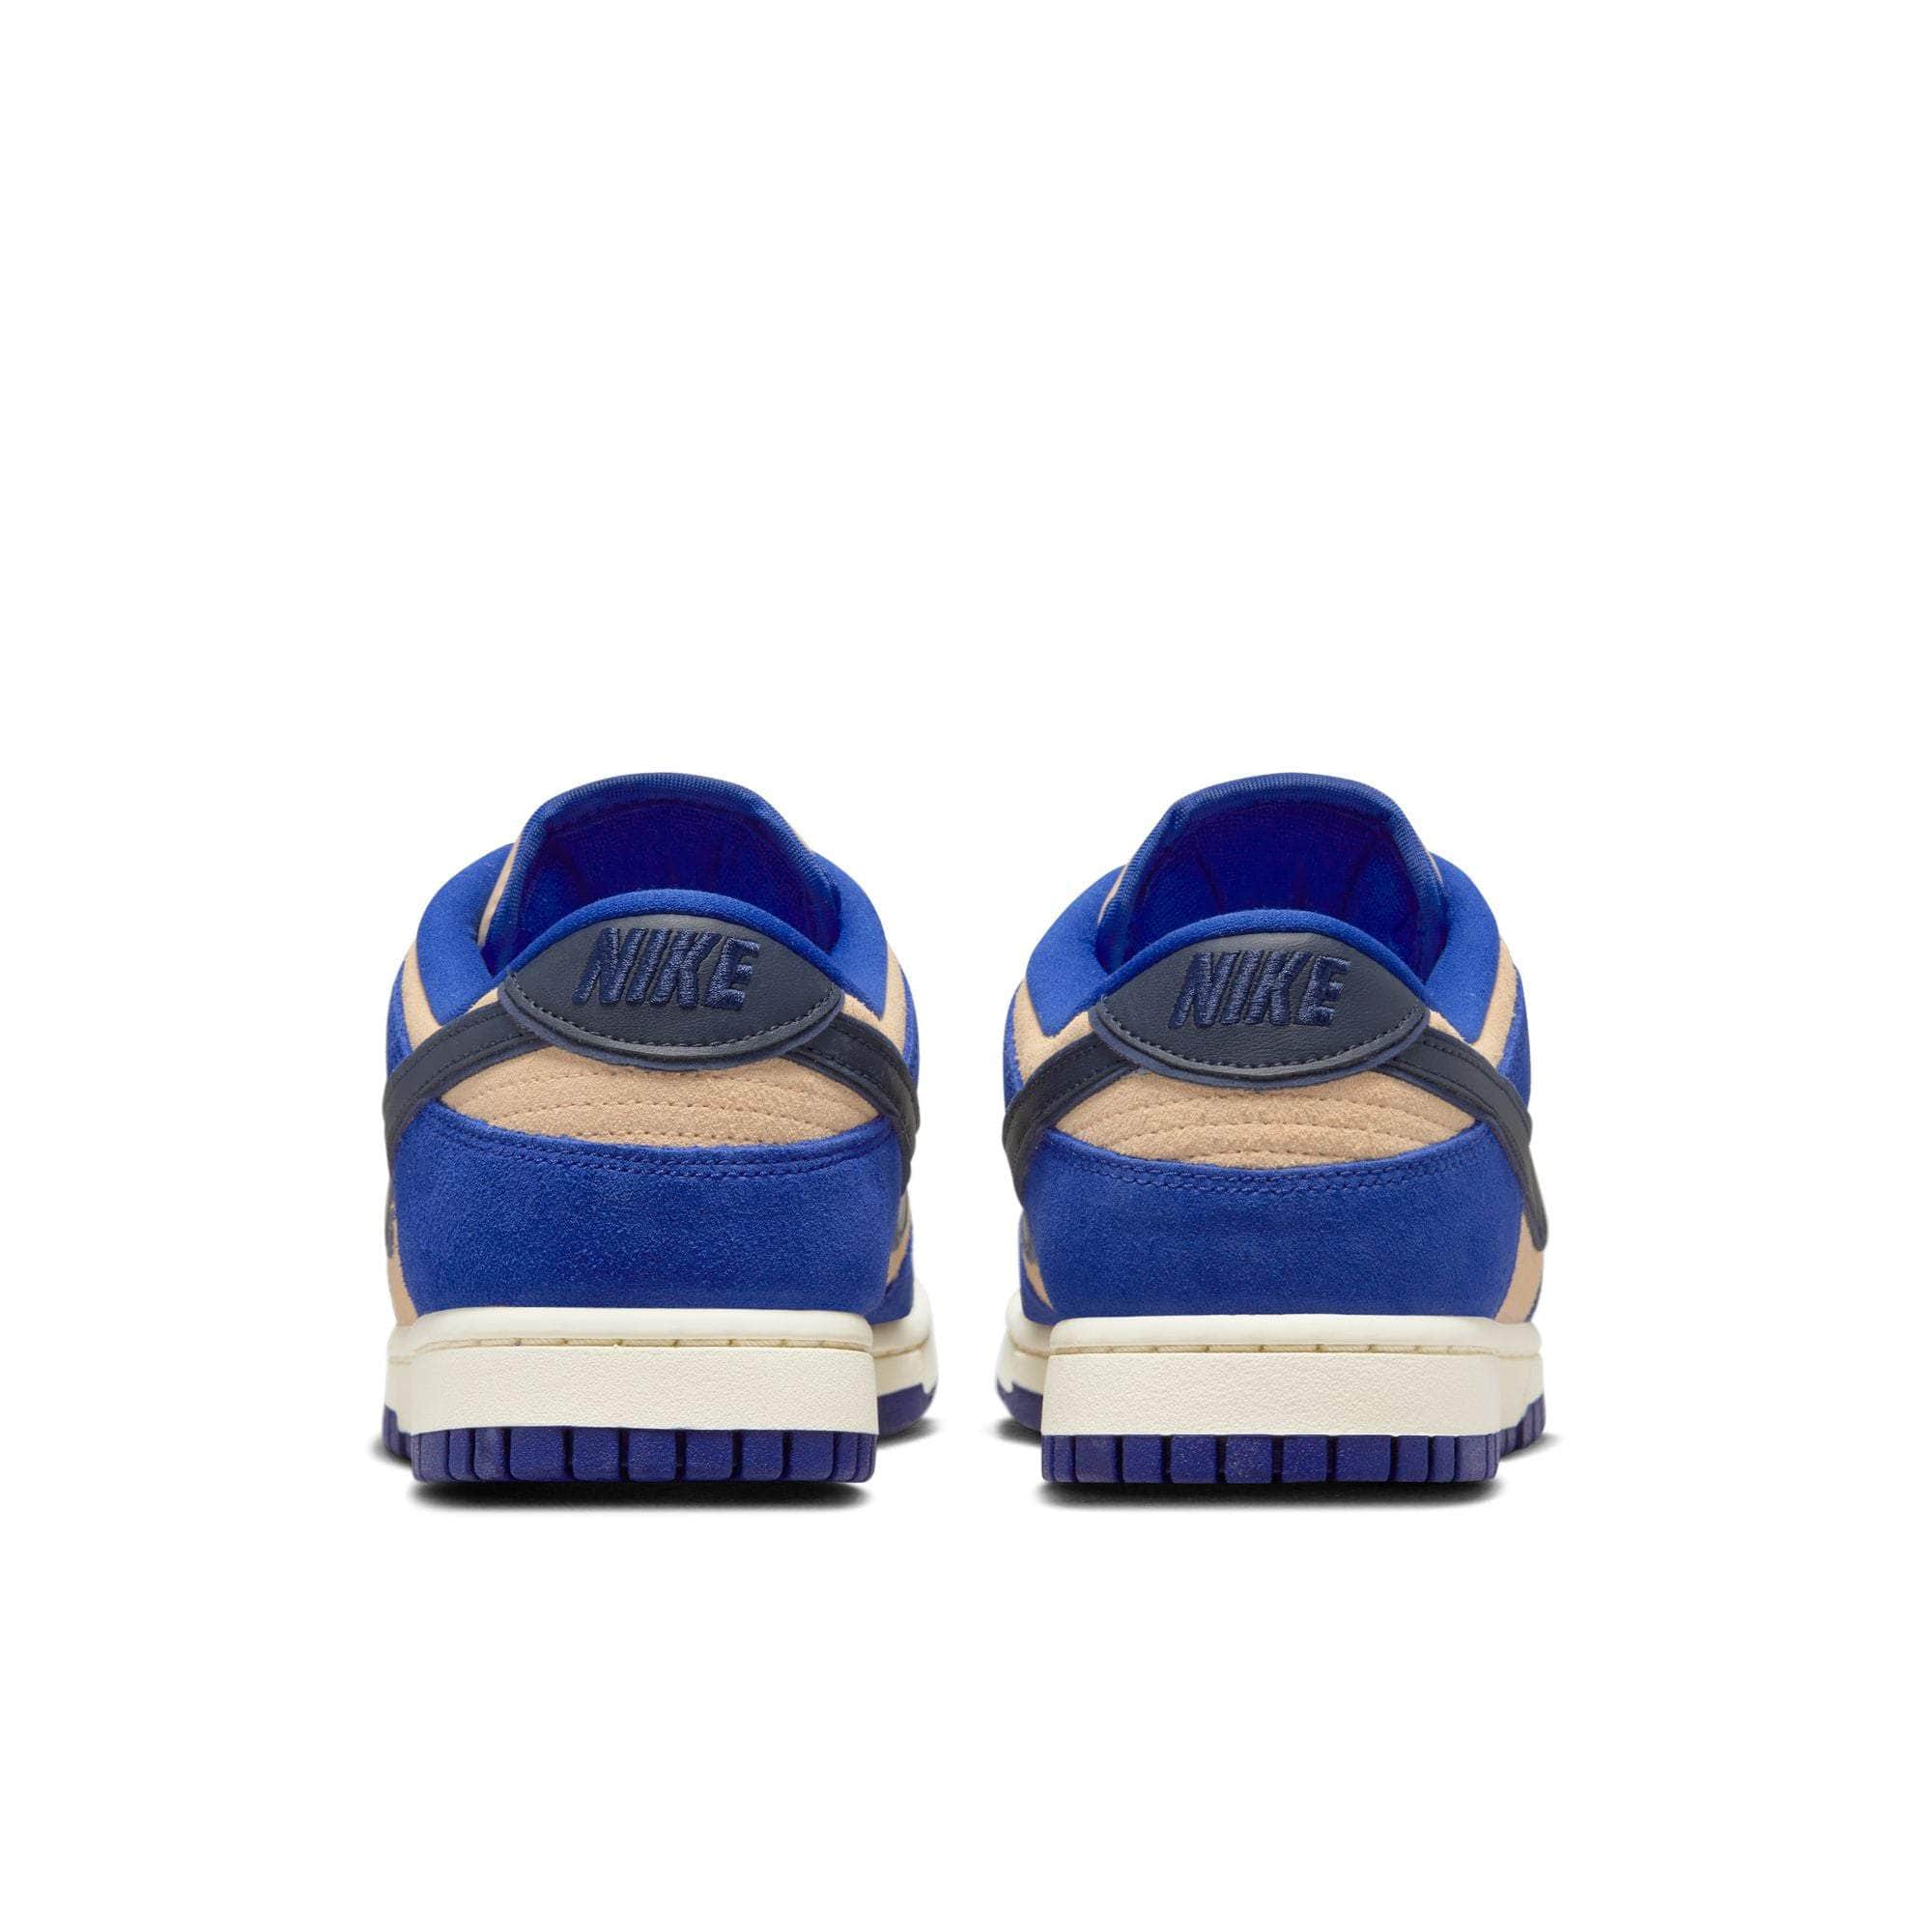 NIKE FOOTWEAR Nike Dunk Low LX "Blue Suede" - Women's